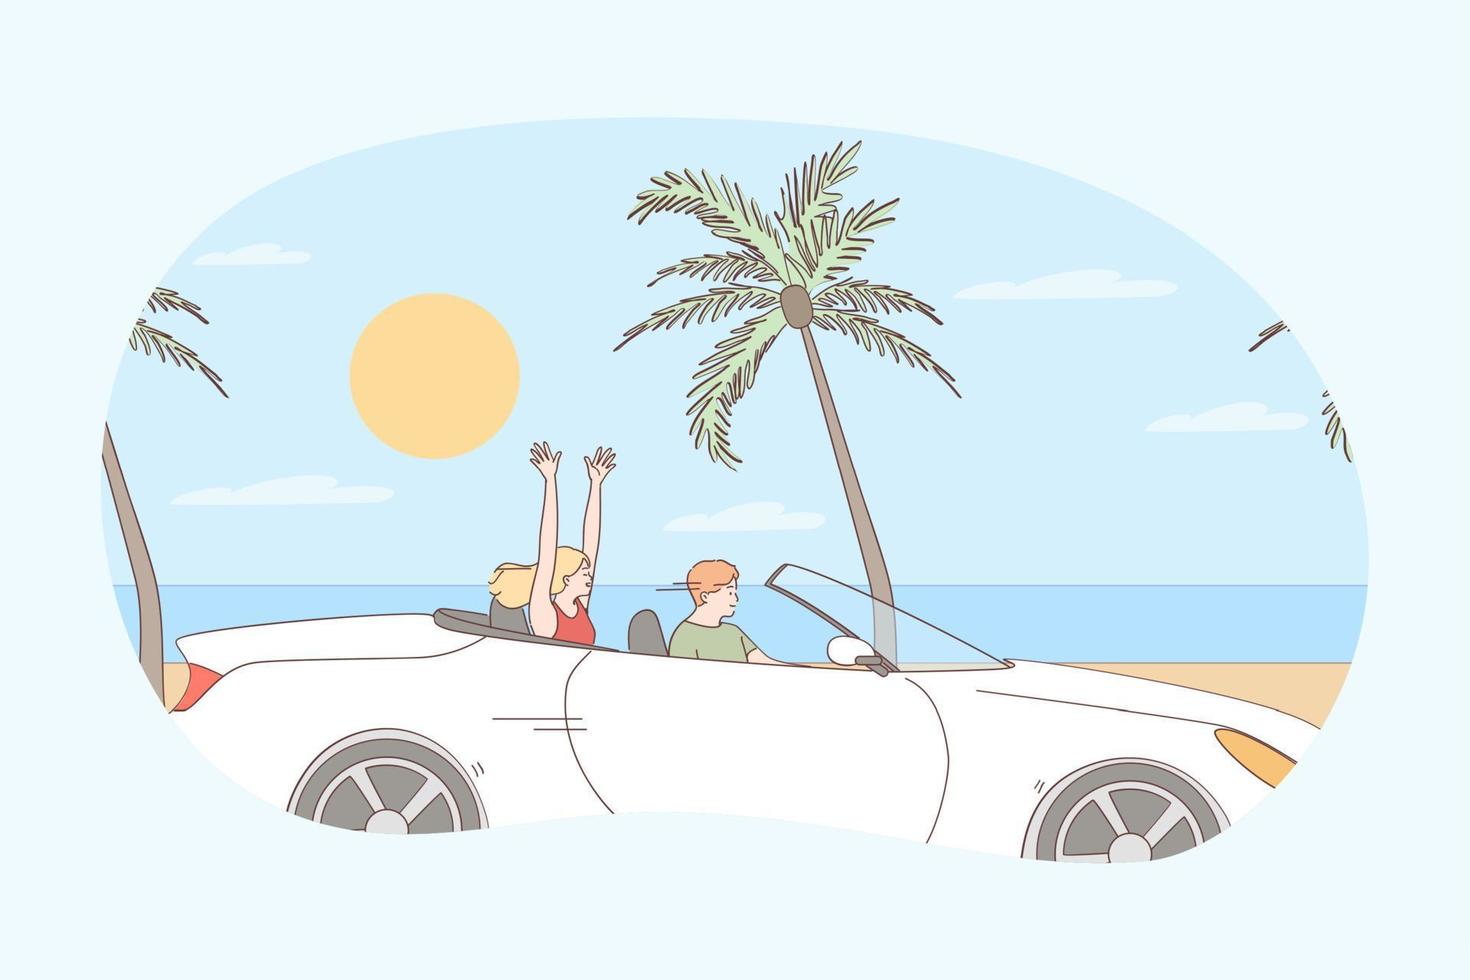 conduite pendant le concept de vacances. personnages de dessins animés de jeune couple heureux assis dans la voiture et conduisant le long de la mer en été pendant le voyage illustration vectorielle de voyage vecteur